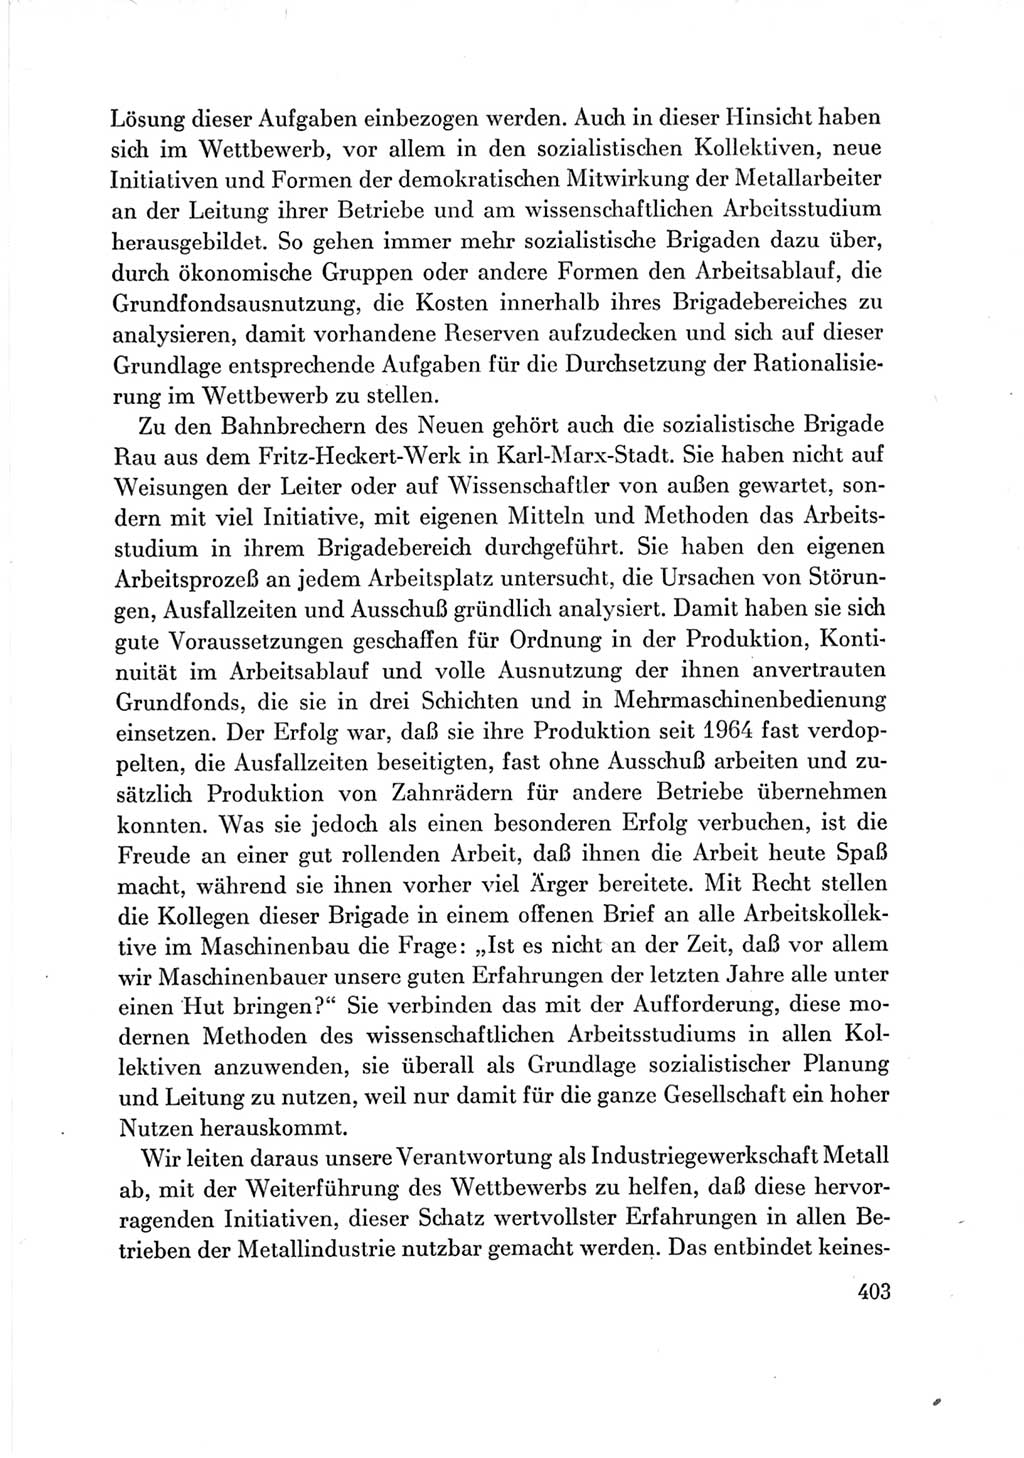 Protokoll der Verhandlungen des Ⅶ. Parteitages der Sozialistischen Einheitspartei Deutschlands (SED) [Deutsche Demokratische Republik (DDR)] 1967, Band Ⅲ, Seite 403 (Prot. Verh. Ⅶ. PT SED DDR 1967, Bd. Ⅲ, S. 403)